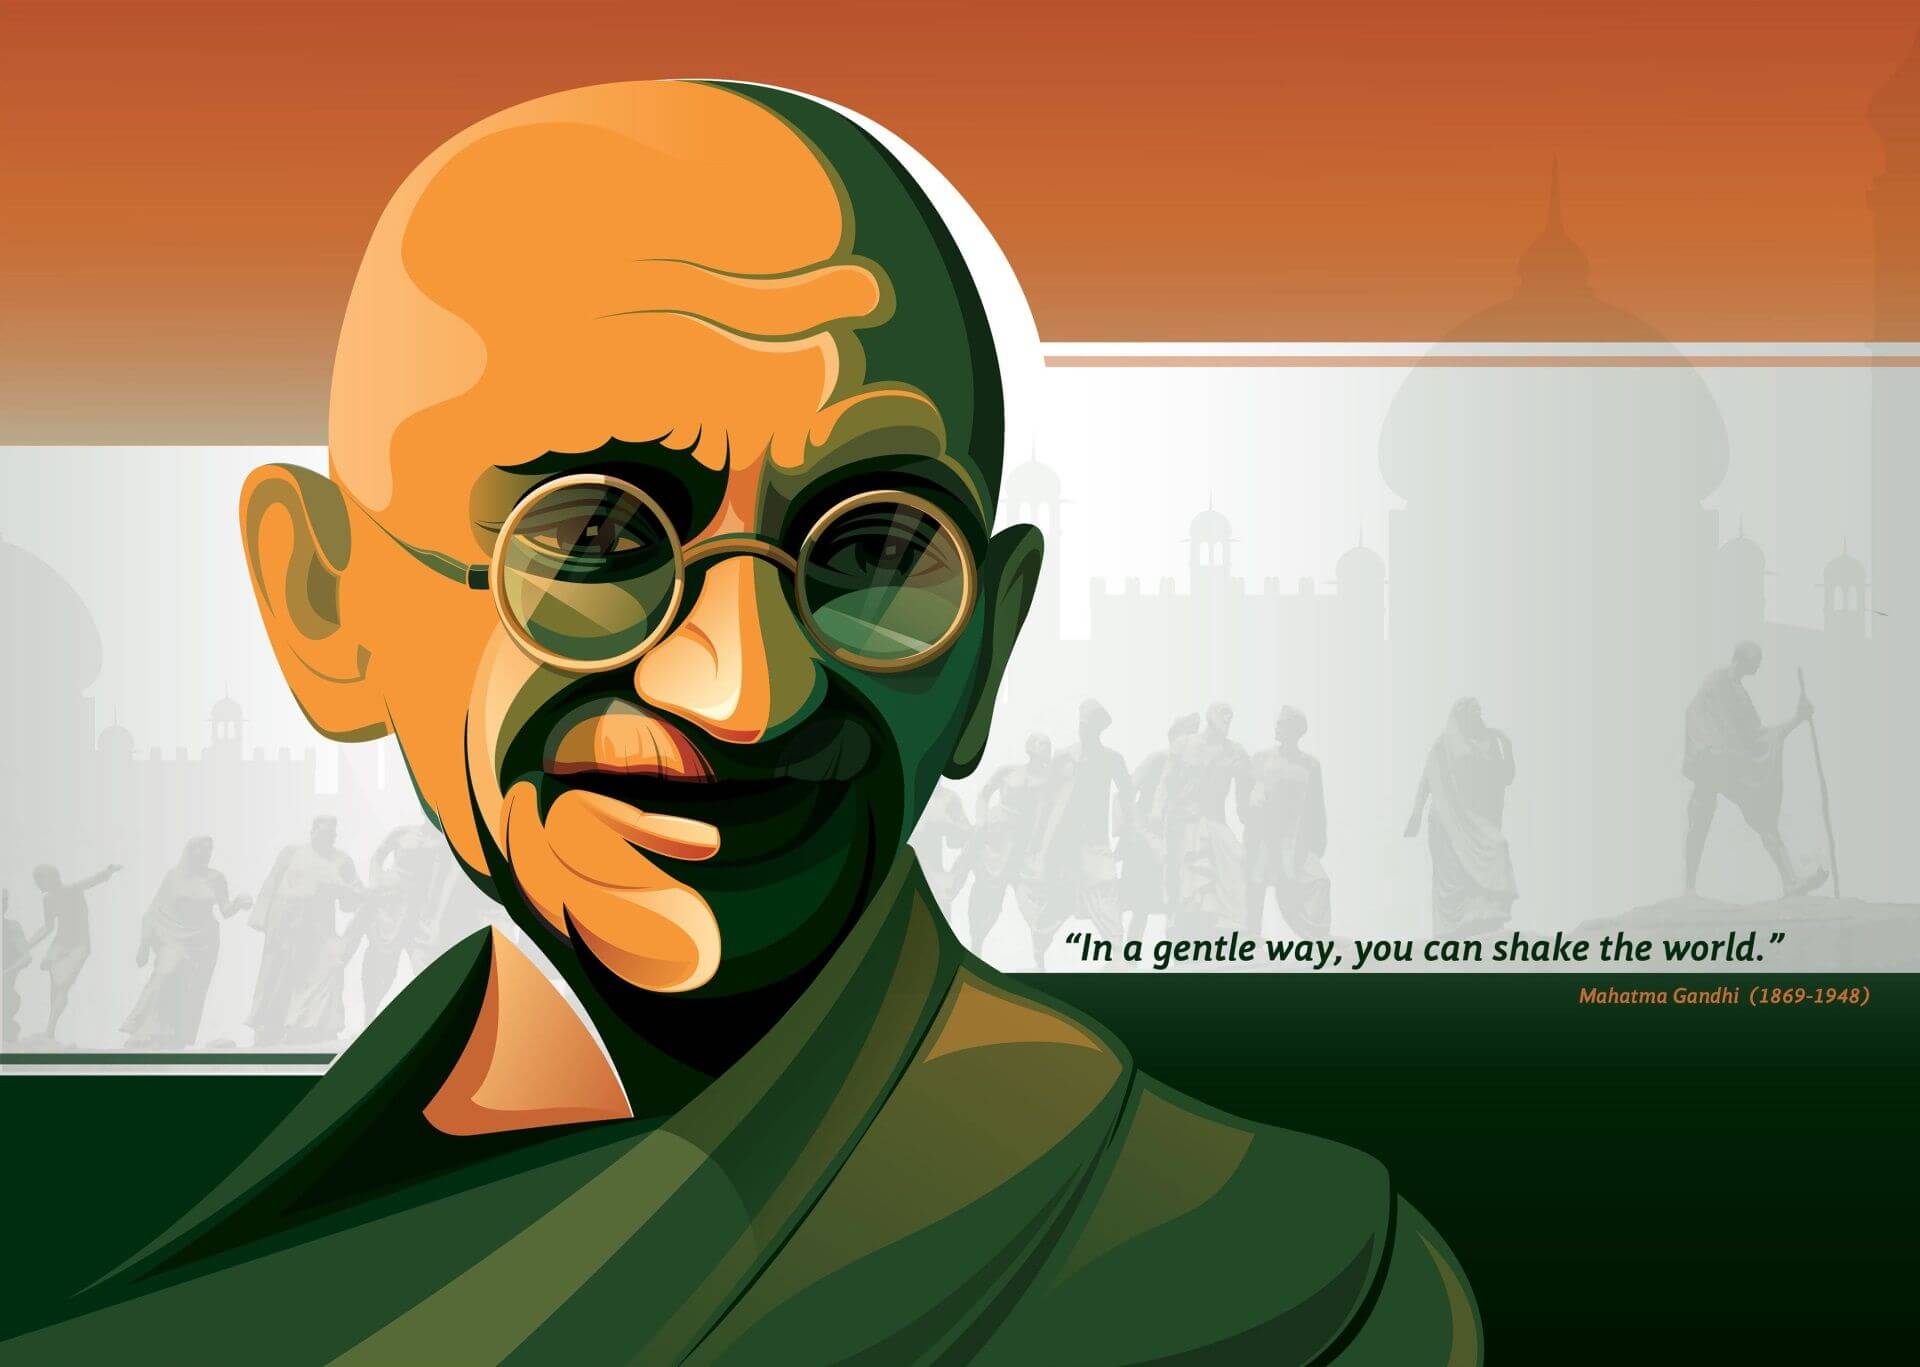 Mahatma Gandhi Kimdir? "Yüce Ruh" Olarak Bilinen Hintli Lider